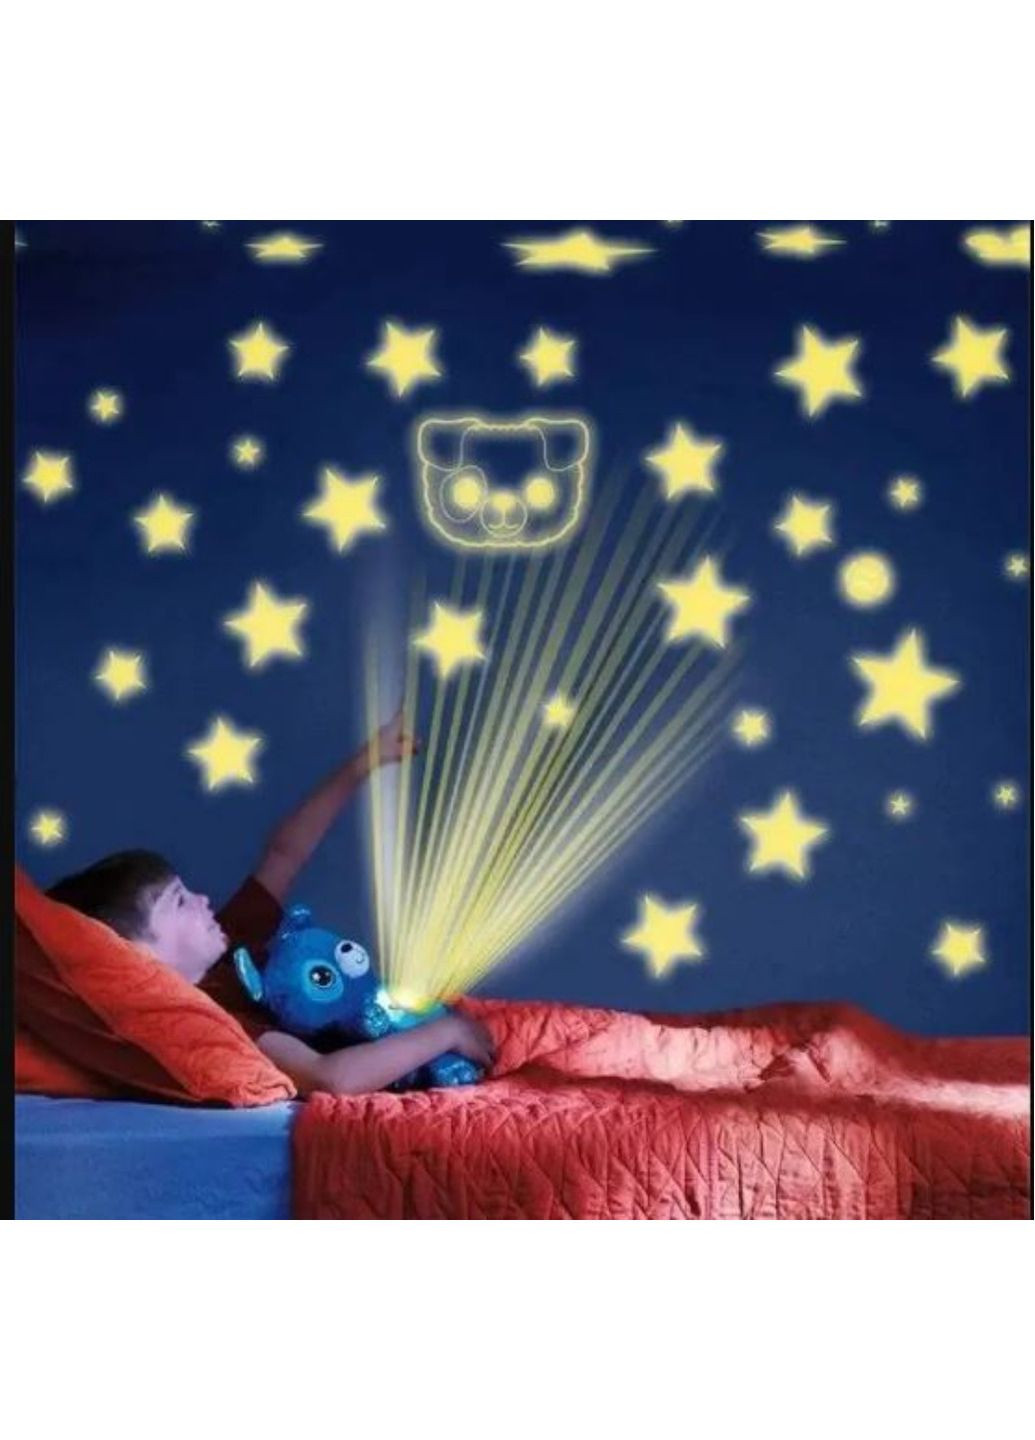 Ночник проектор звёздного неба мишка мягкая игрушка большая лед подсветка на потолок 7 цветов No Brand (262094734)